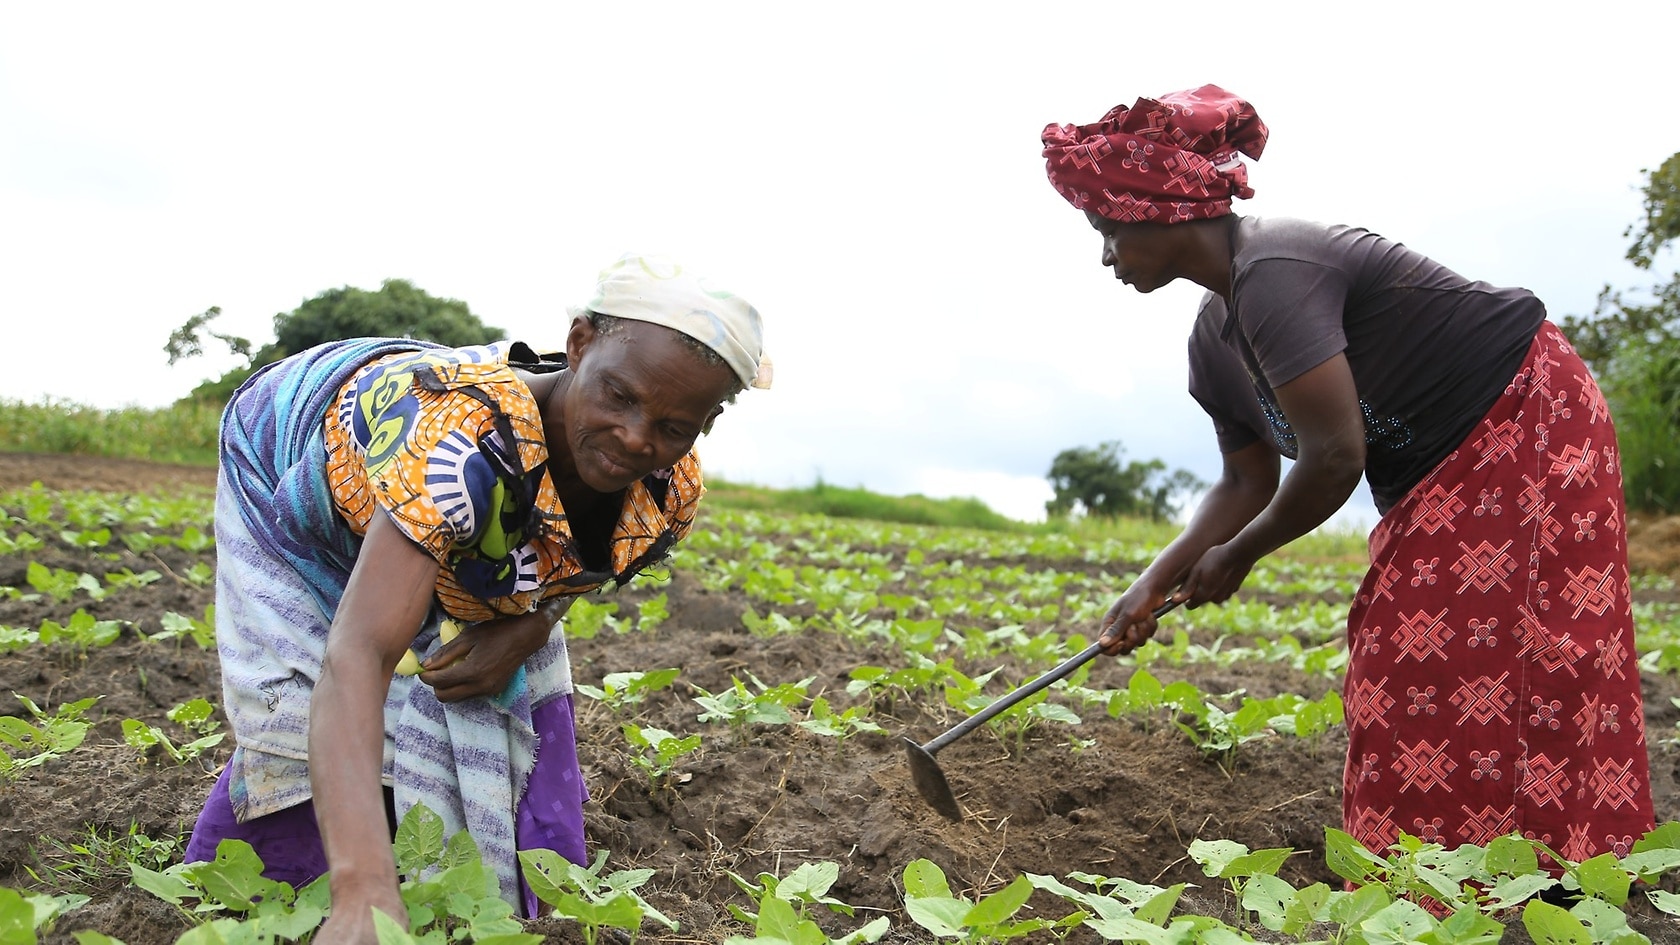 Nachhaltige Projekte in der Landwirtschaft und alternative Lebensformen wurden eigens für die Frauen geschaffen.